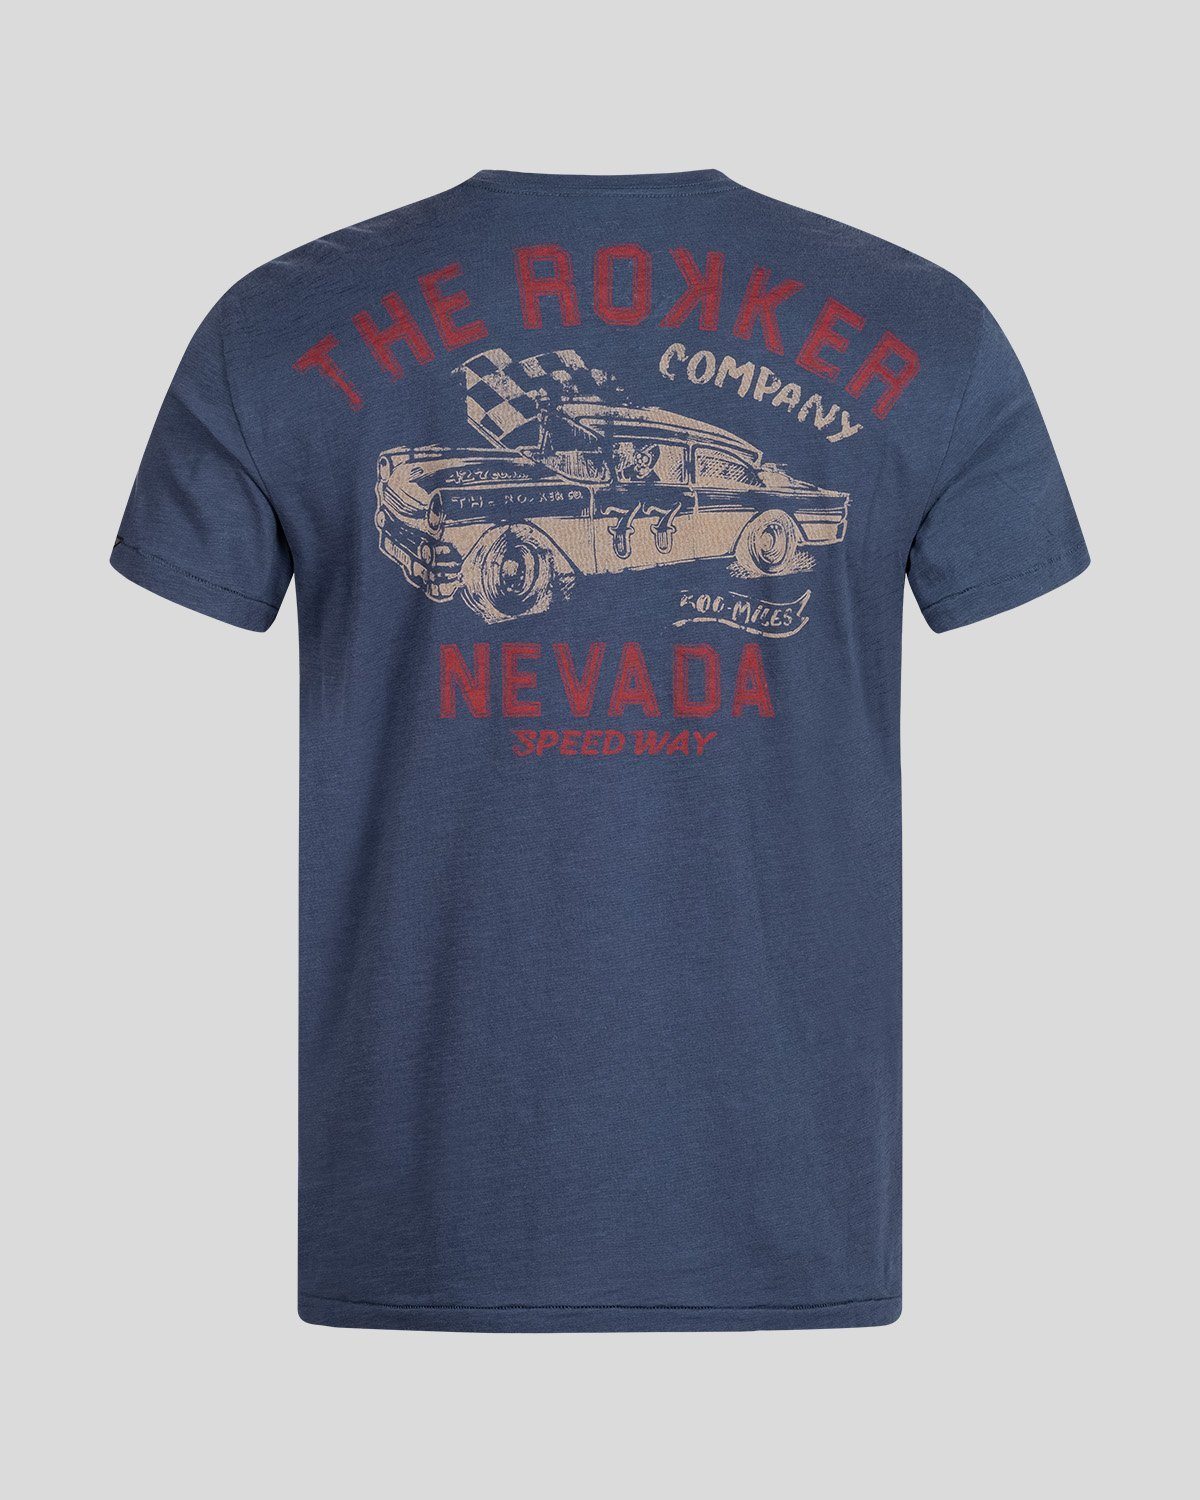 Nevada Navy T-Shirt The Rokker Company 